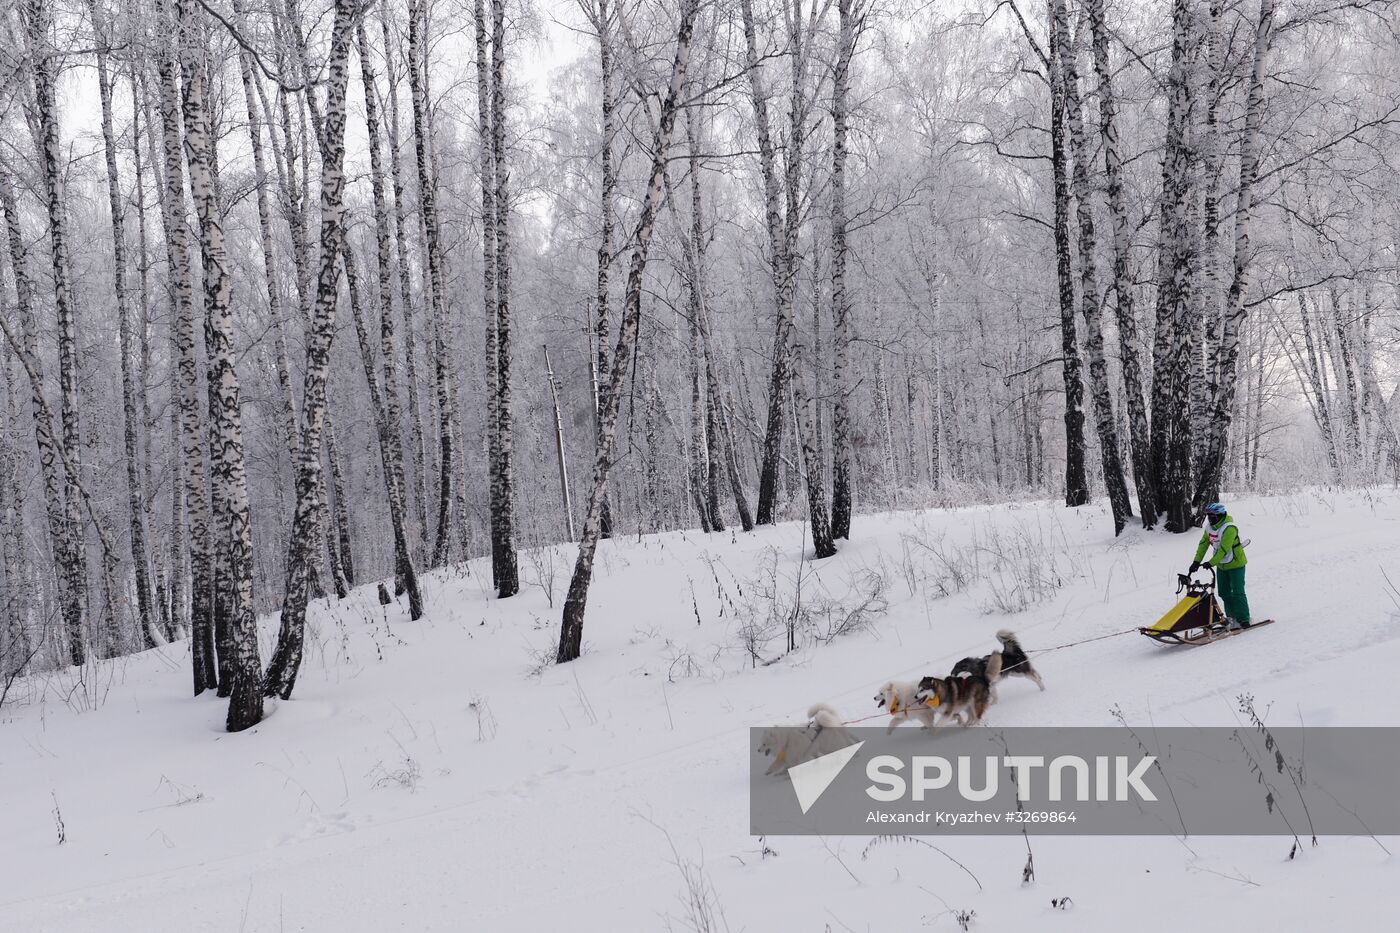 Dog sled race in Novosibirsk